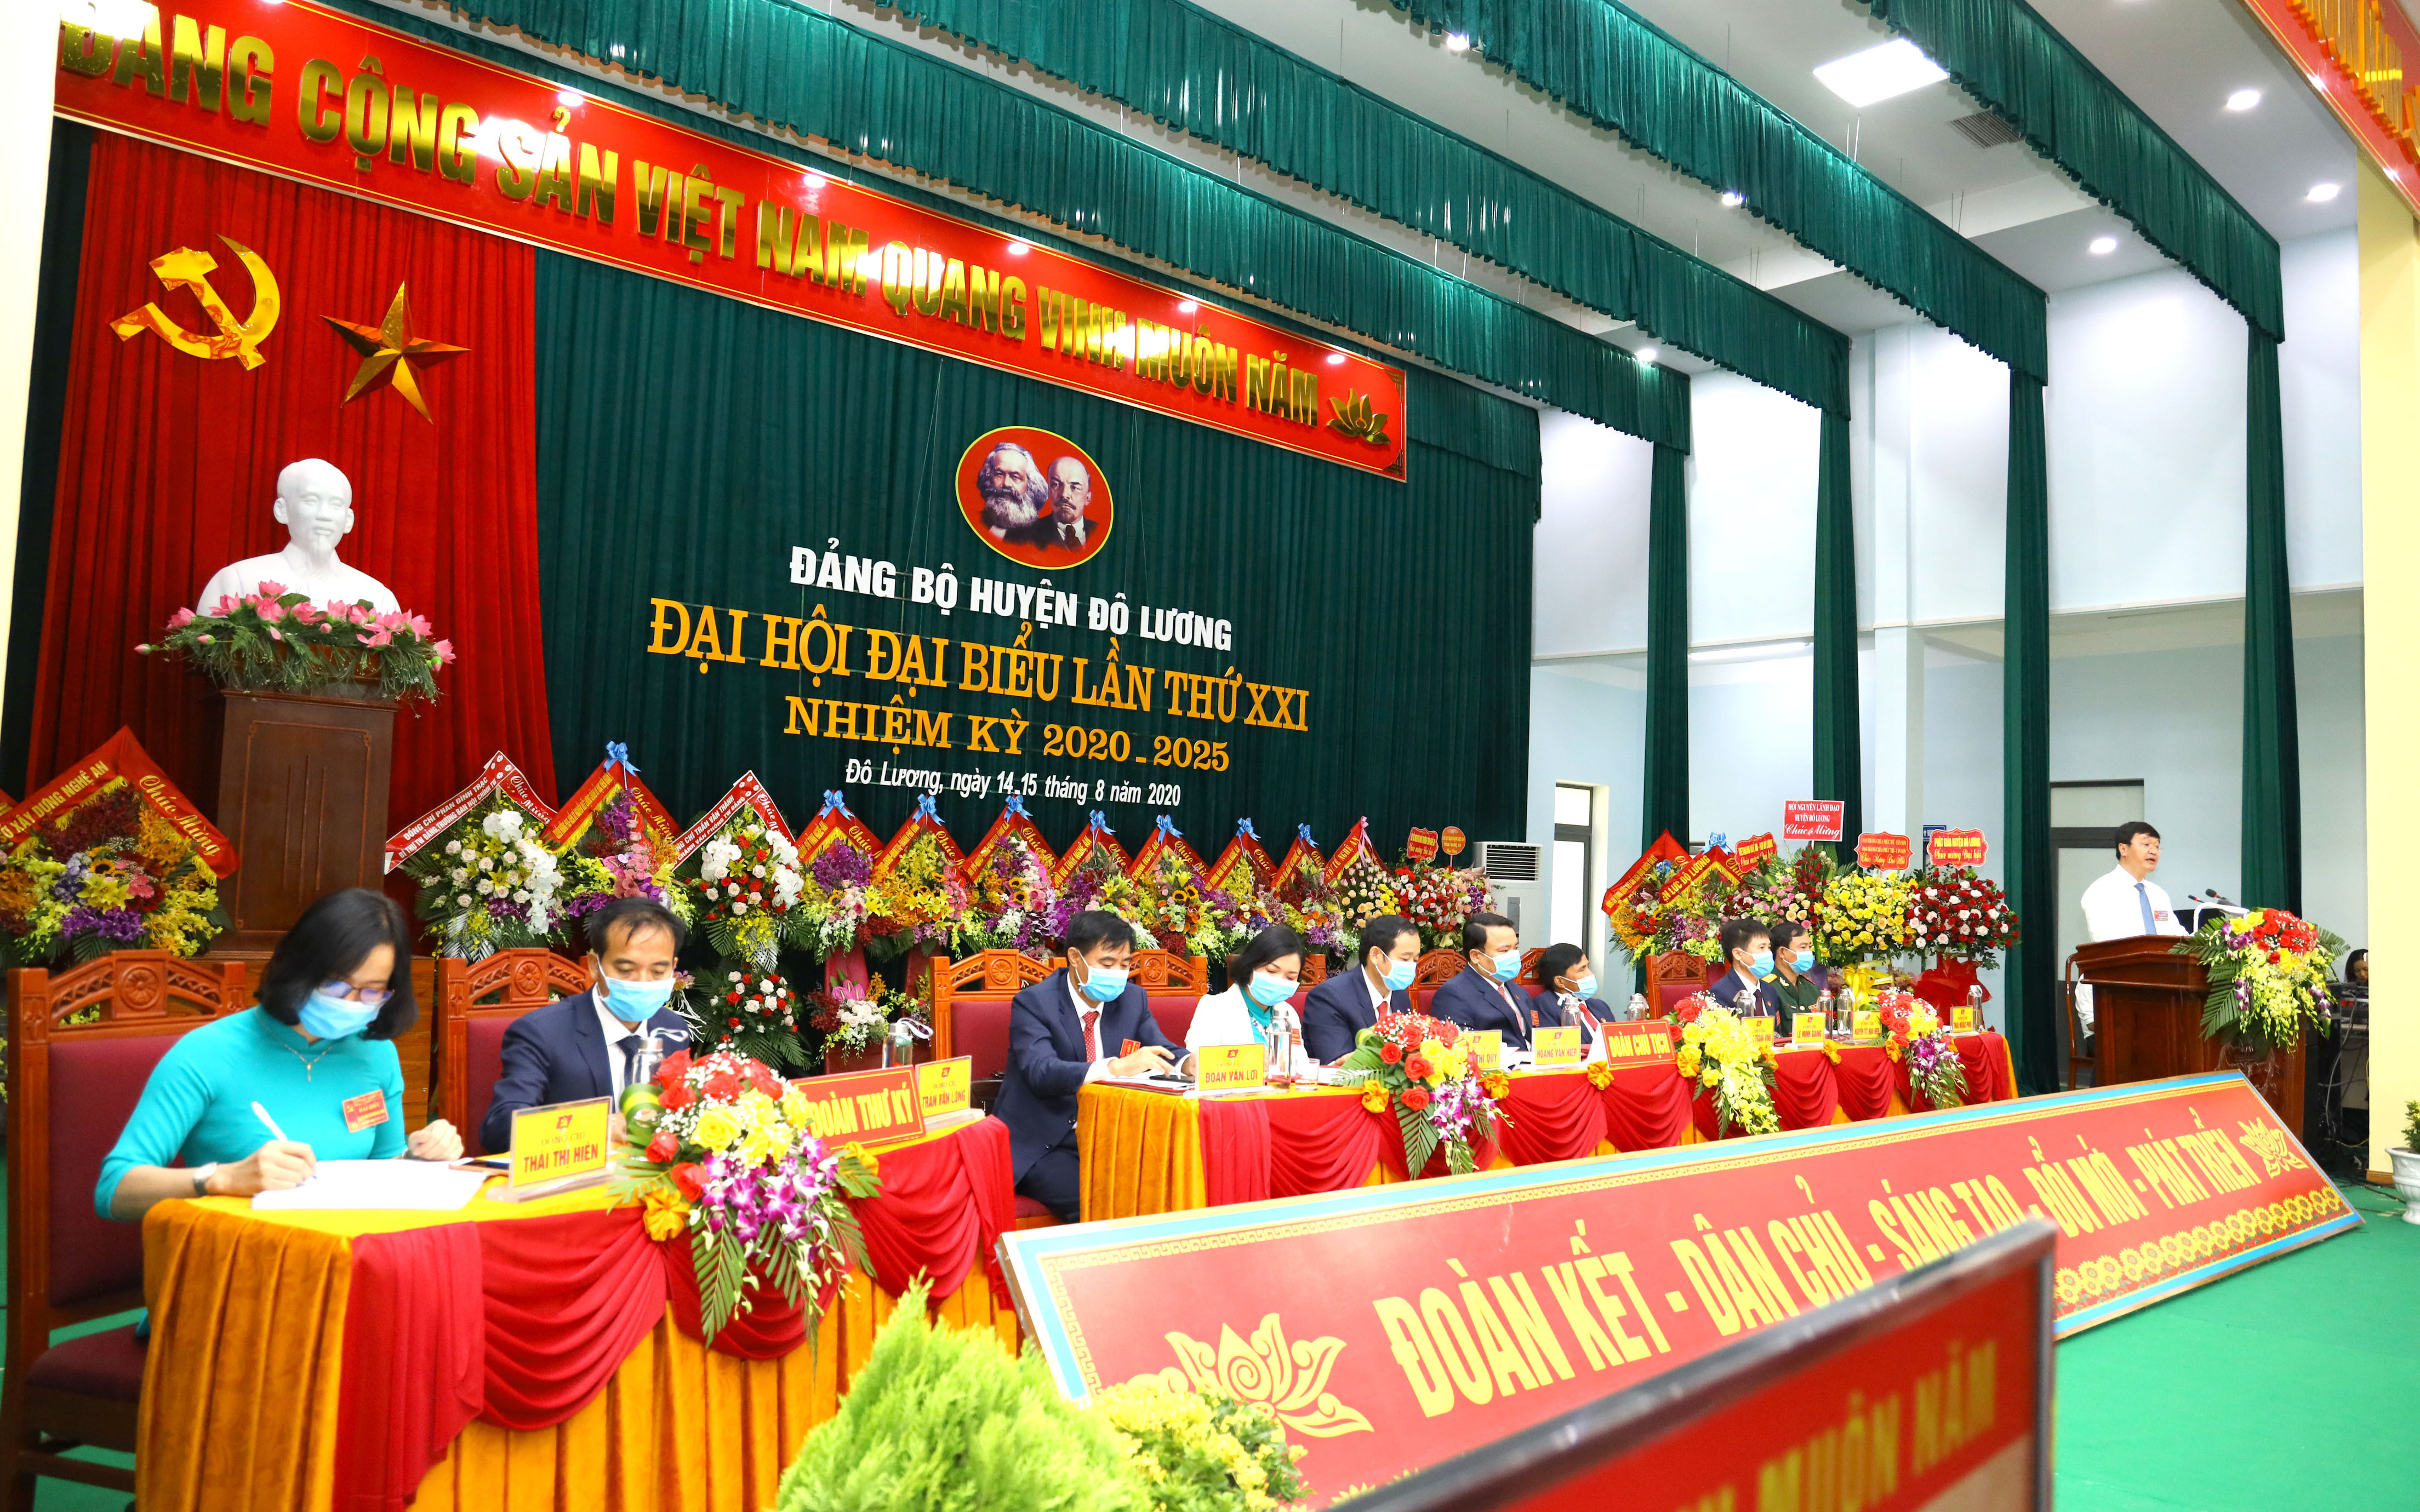 Đoàn Chủ tịch và Đoàn thư ký Đại hội Đại biêu Đảng bộ huyện Đô Lương, nhiệm kỳ 2020-2025. Ảnh Nguyên Nguyên